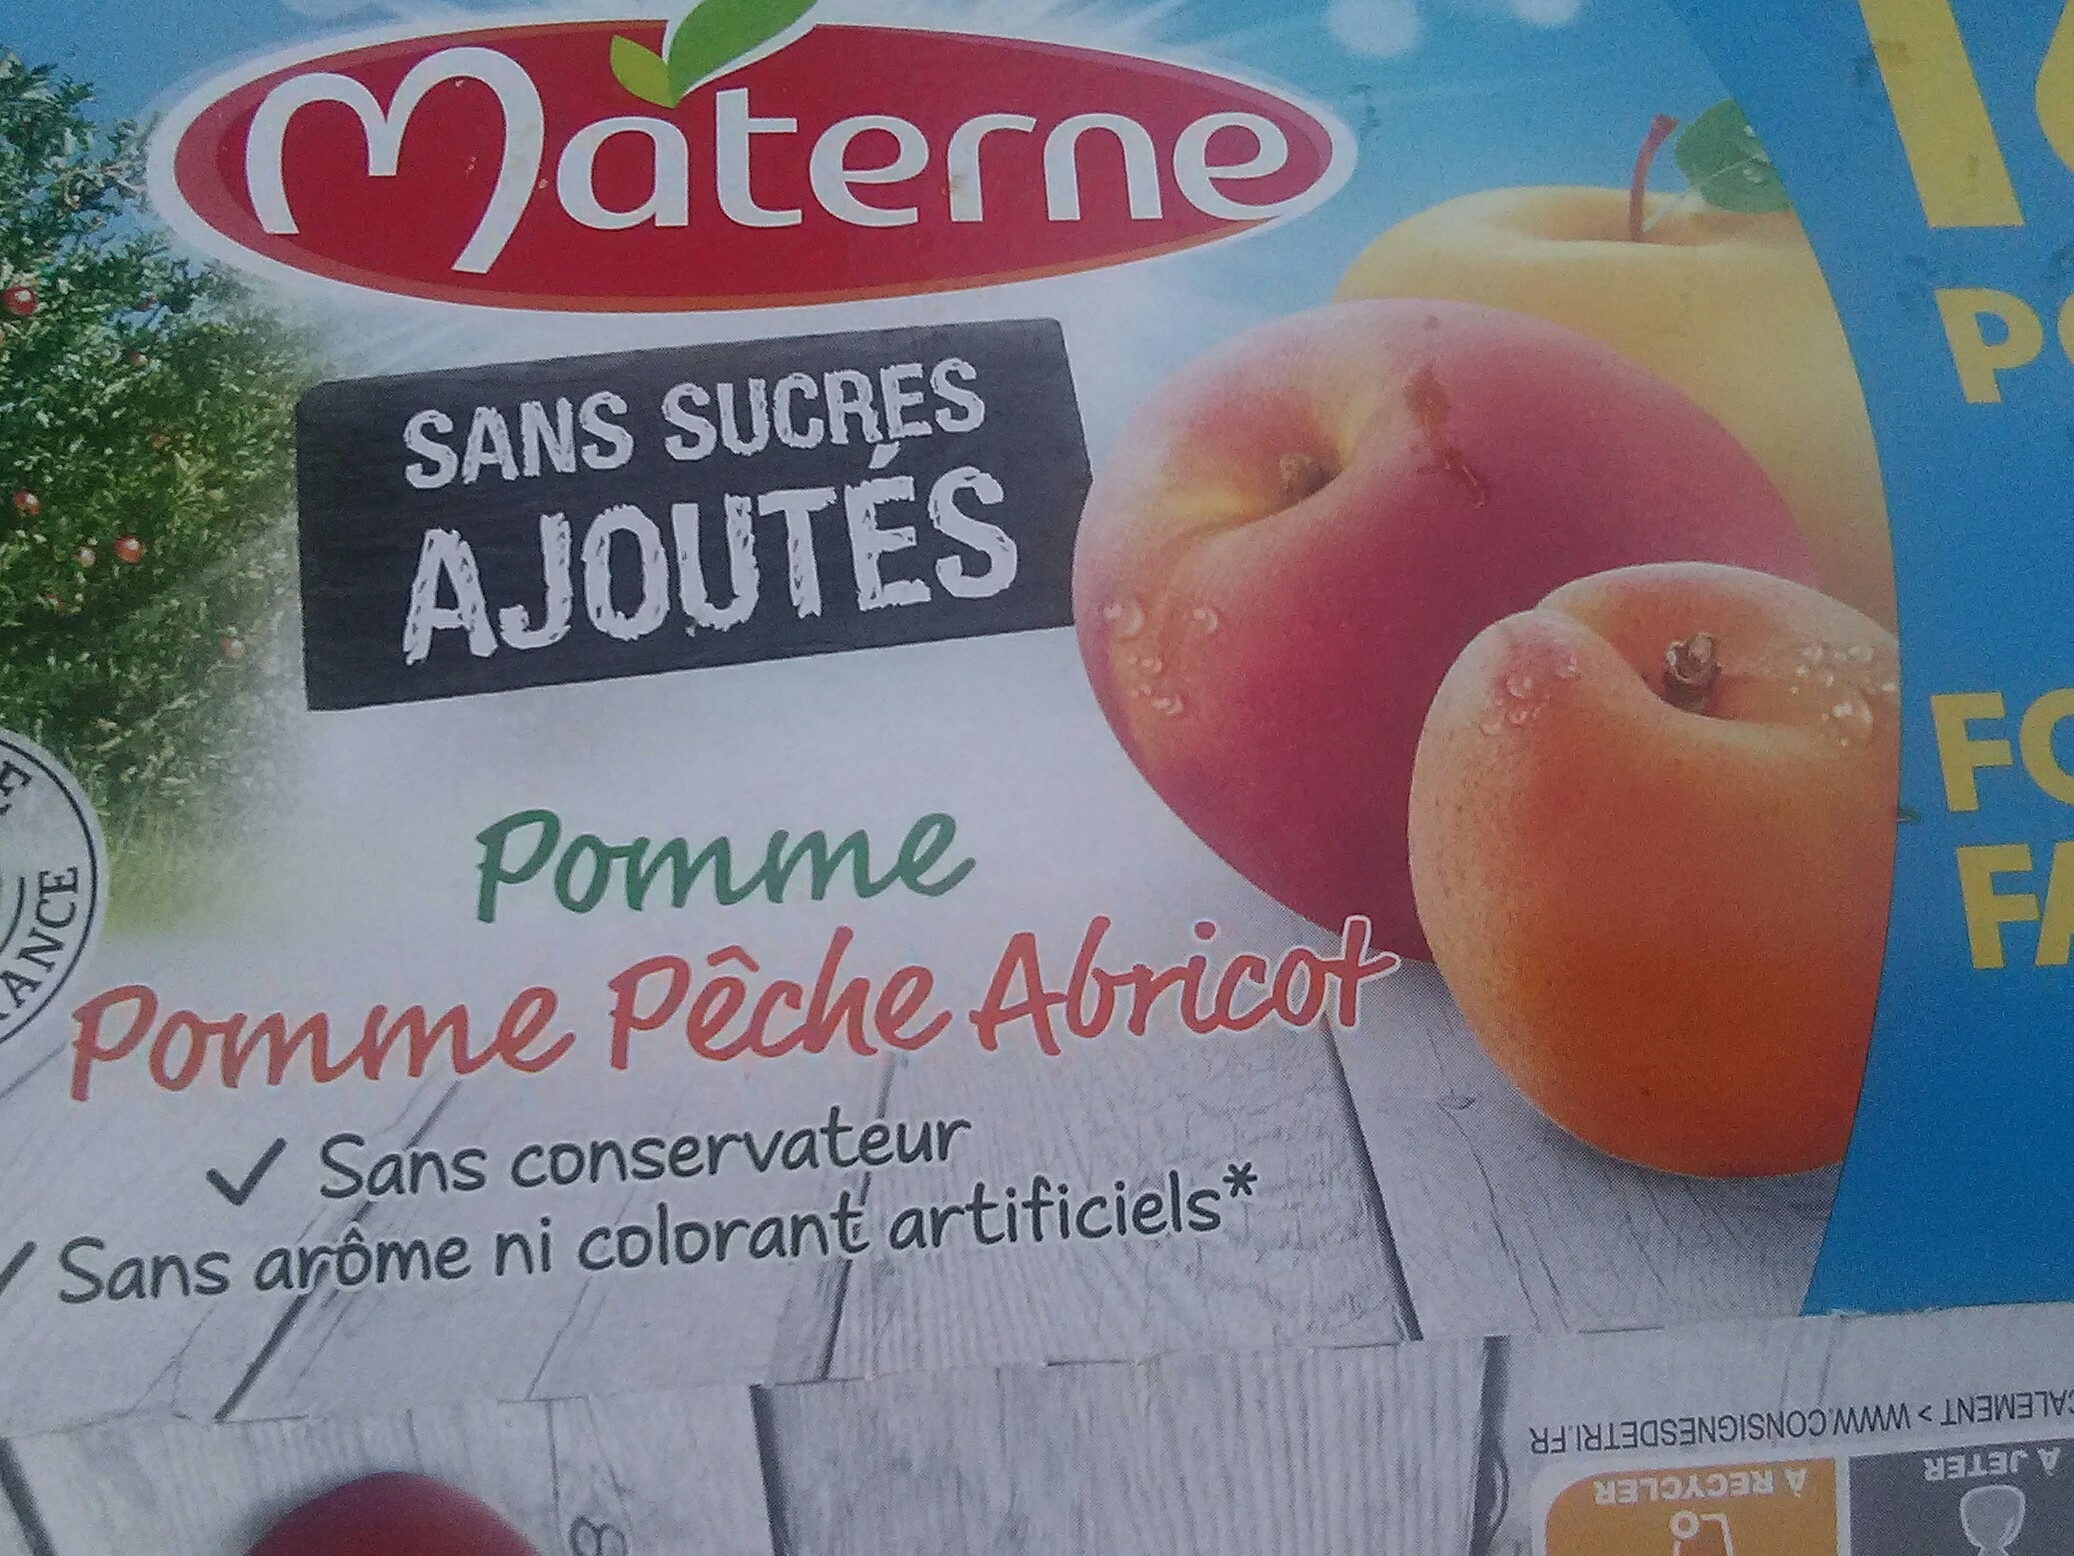 materne pomme peche abricot sabs sucres ajoutes - Prodotto - fr